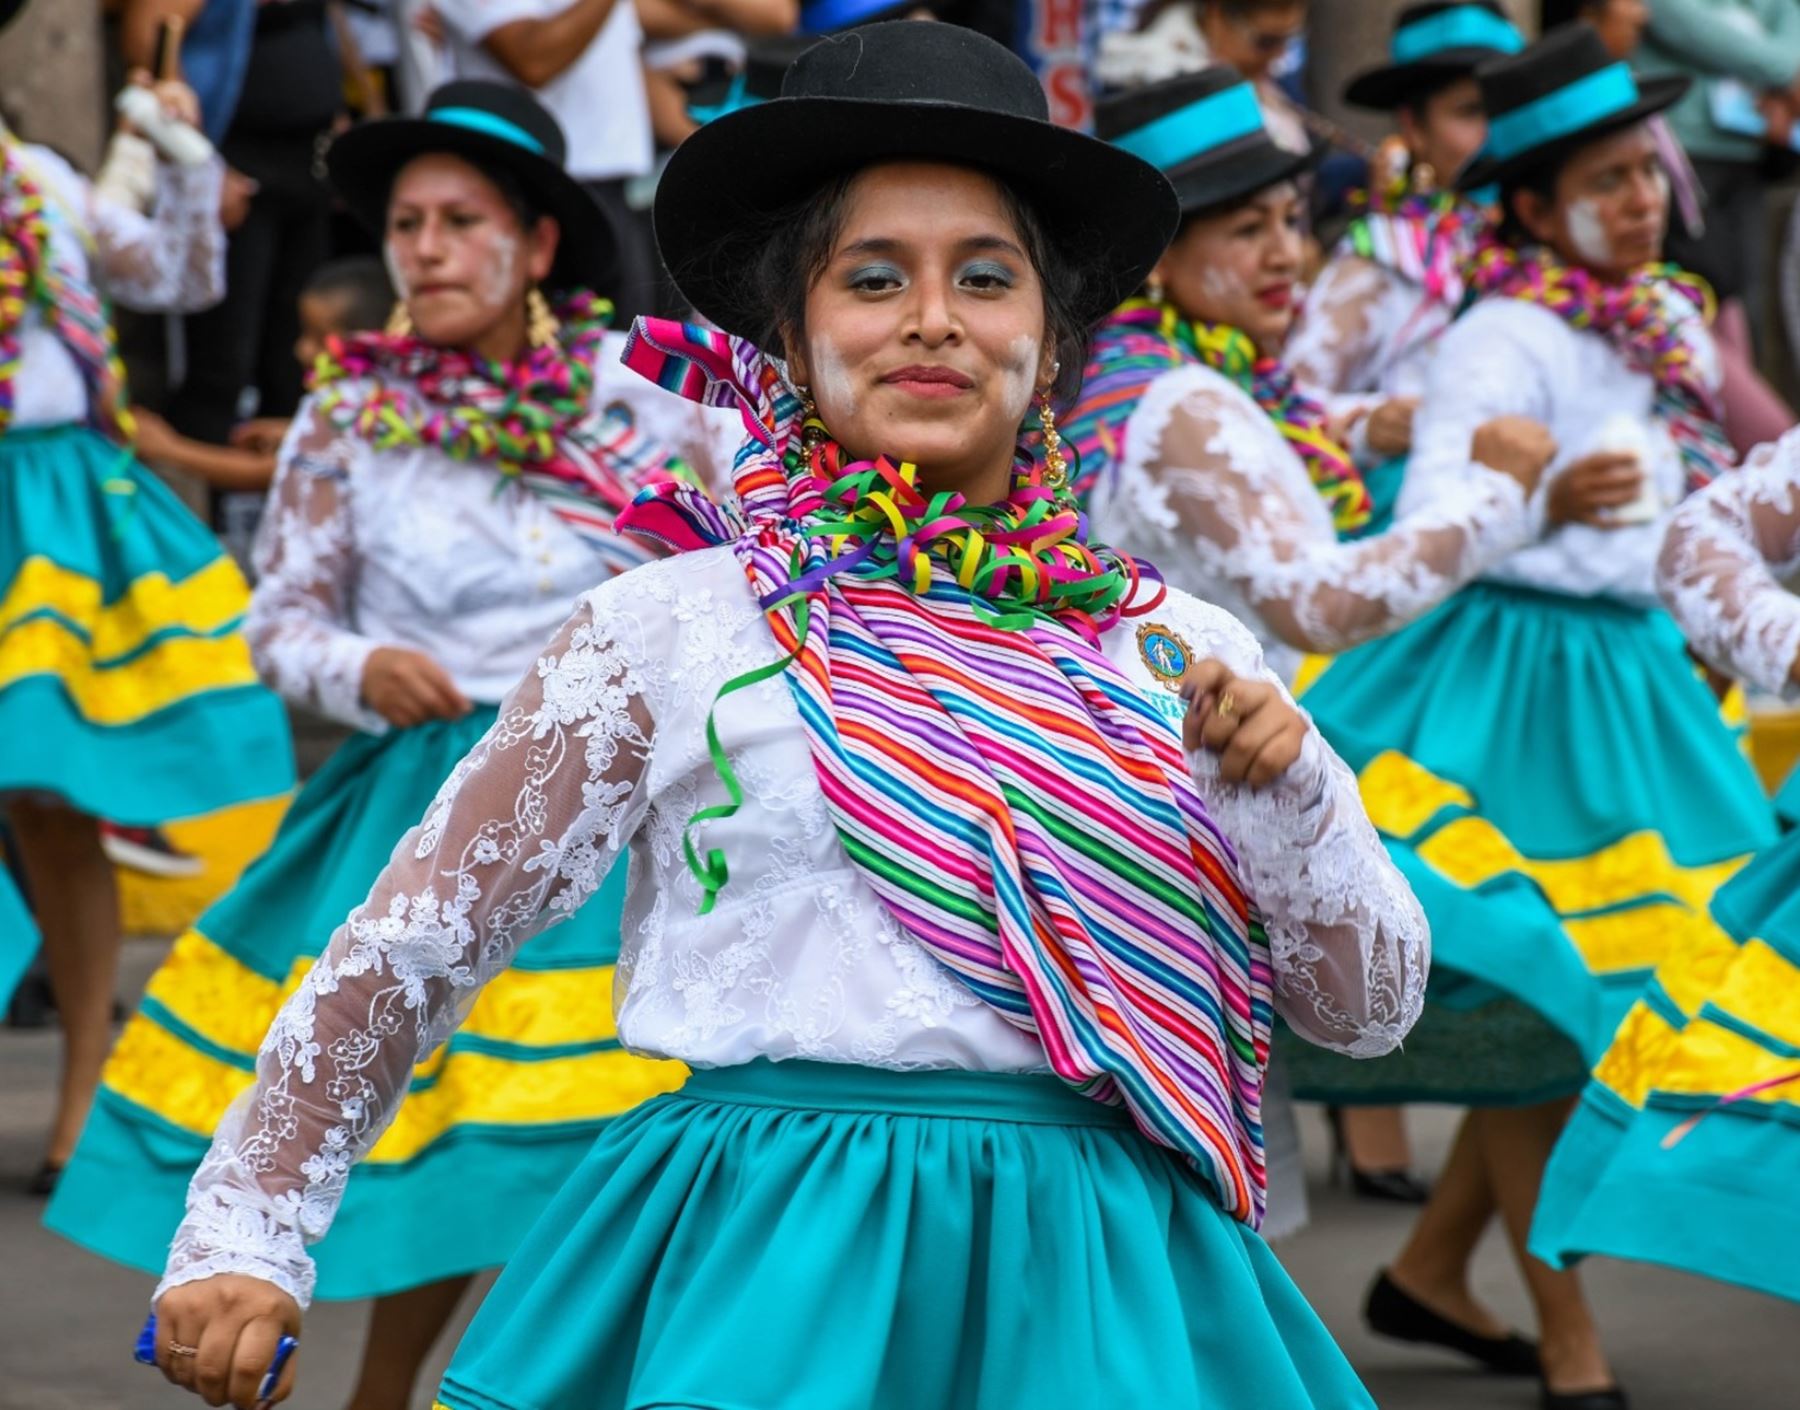 El Carnaval Huantino es una de las fiestas más coloridas de Ayacucho. La provincia de Huanta espera la visita de más de 20,000 turistas para participar de las actividades festivas. ANDINA/Difusión